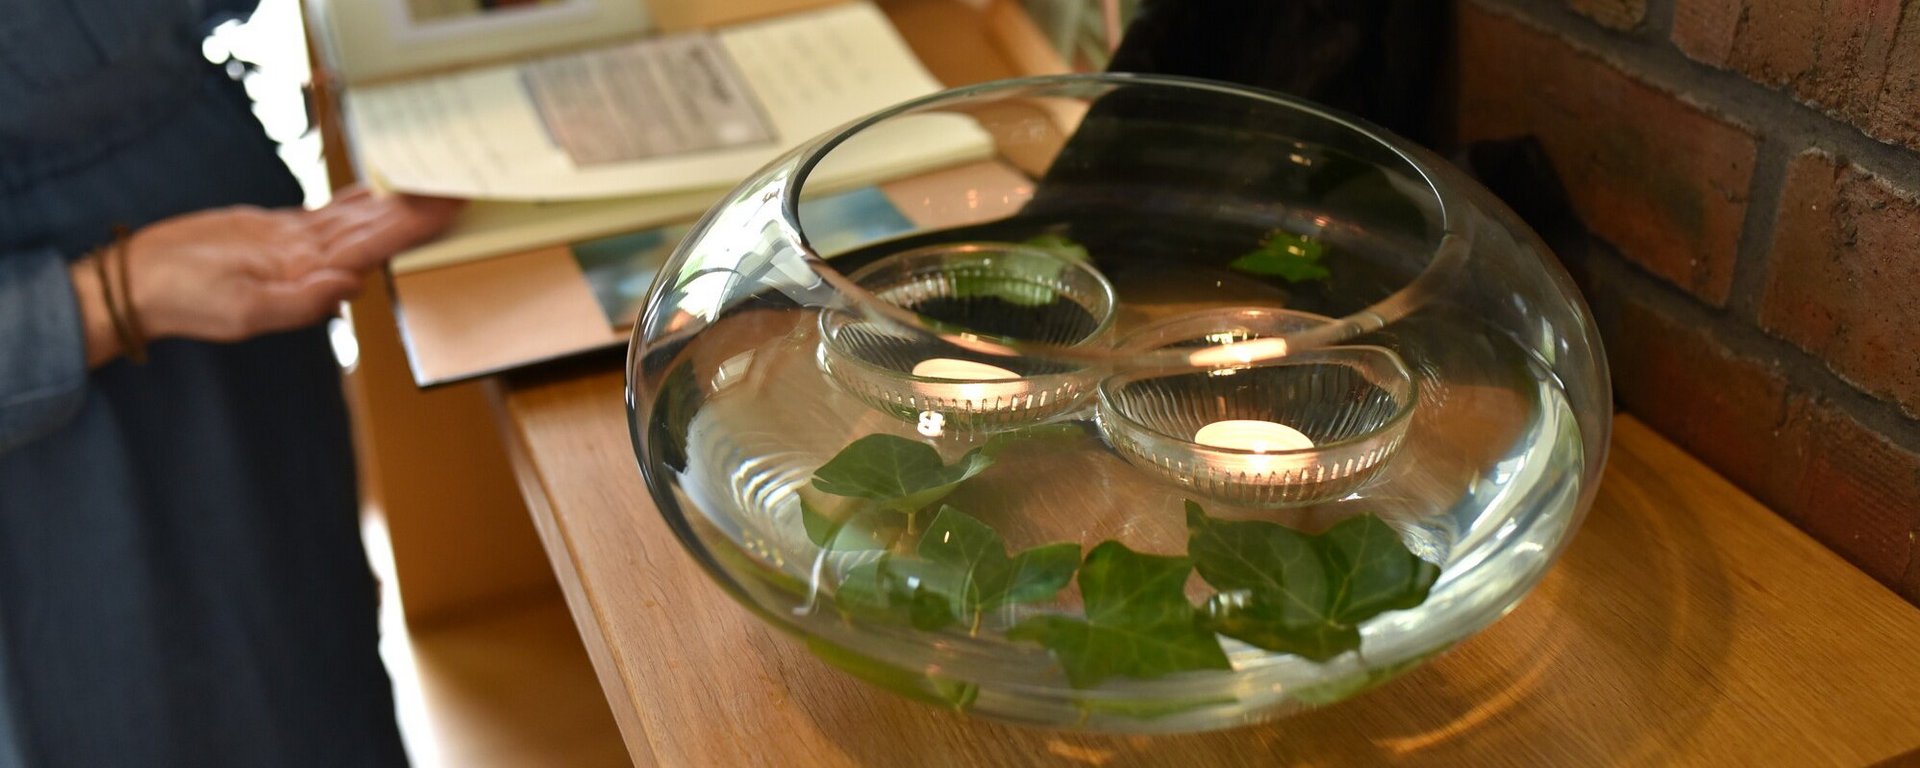 Auf einem Altar für eine Verstorbene im Hospiz steht eine mit Wasser gefüllte Vase, in der zwei Teelichter und Blätter schwimmen.